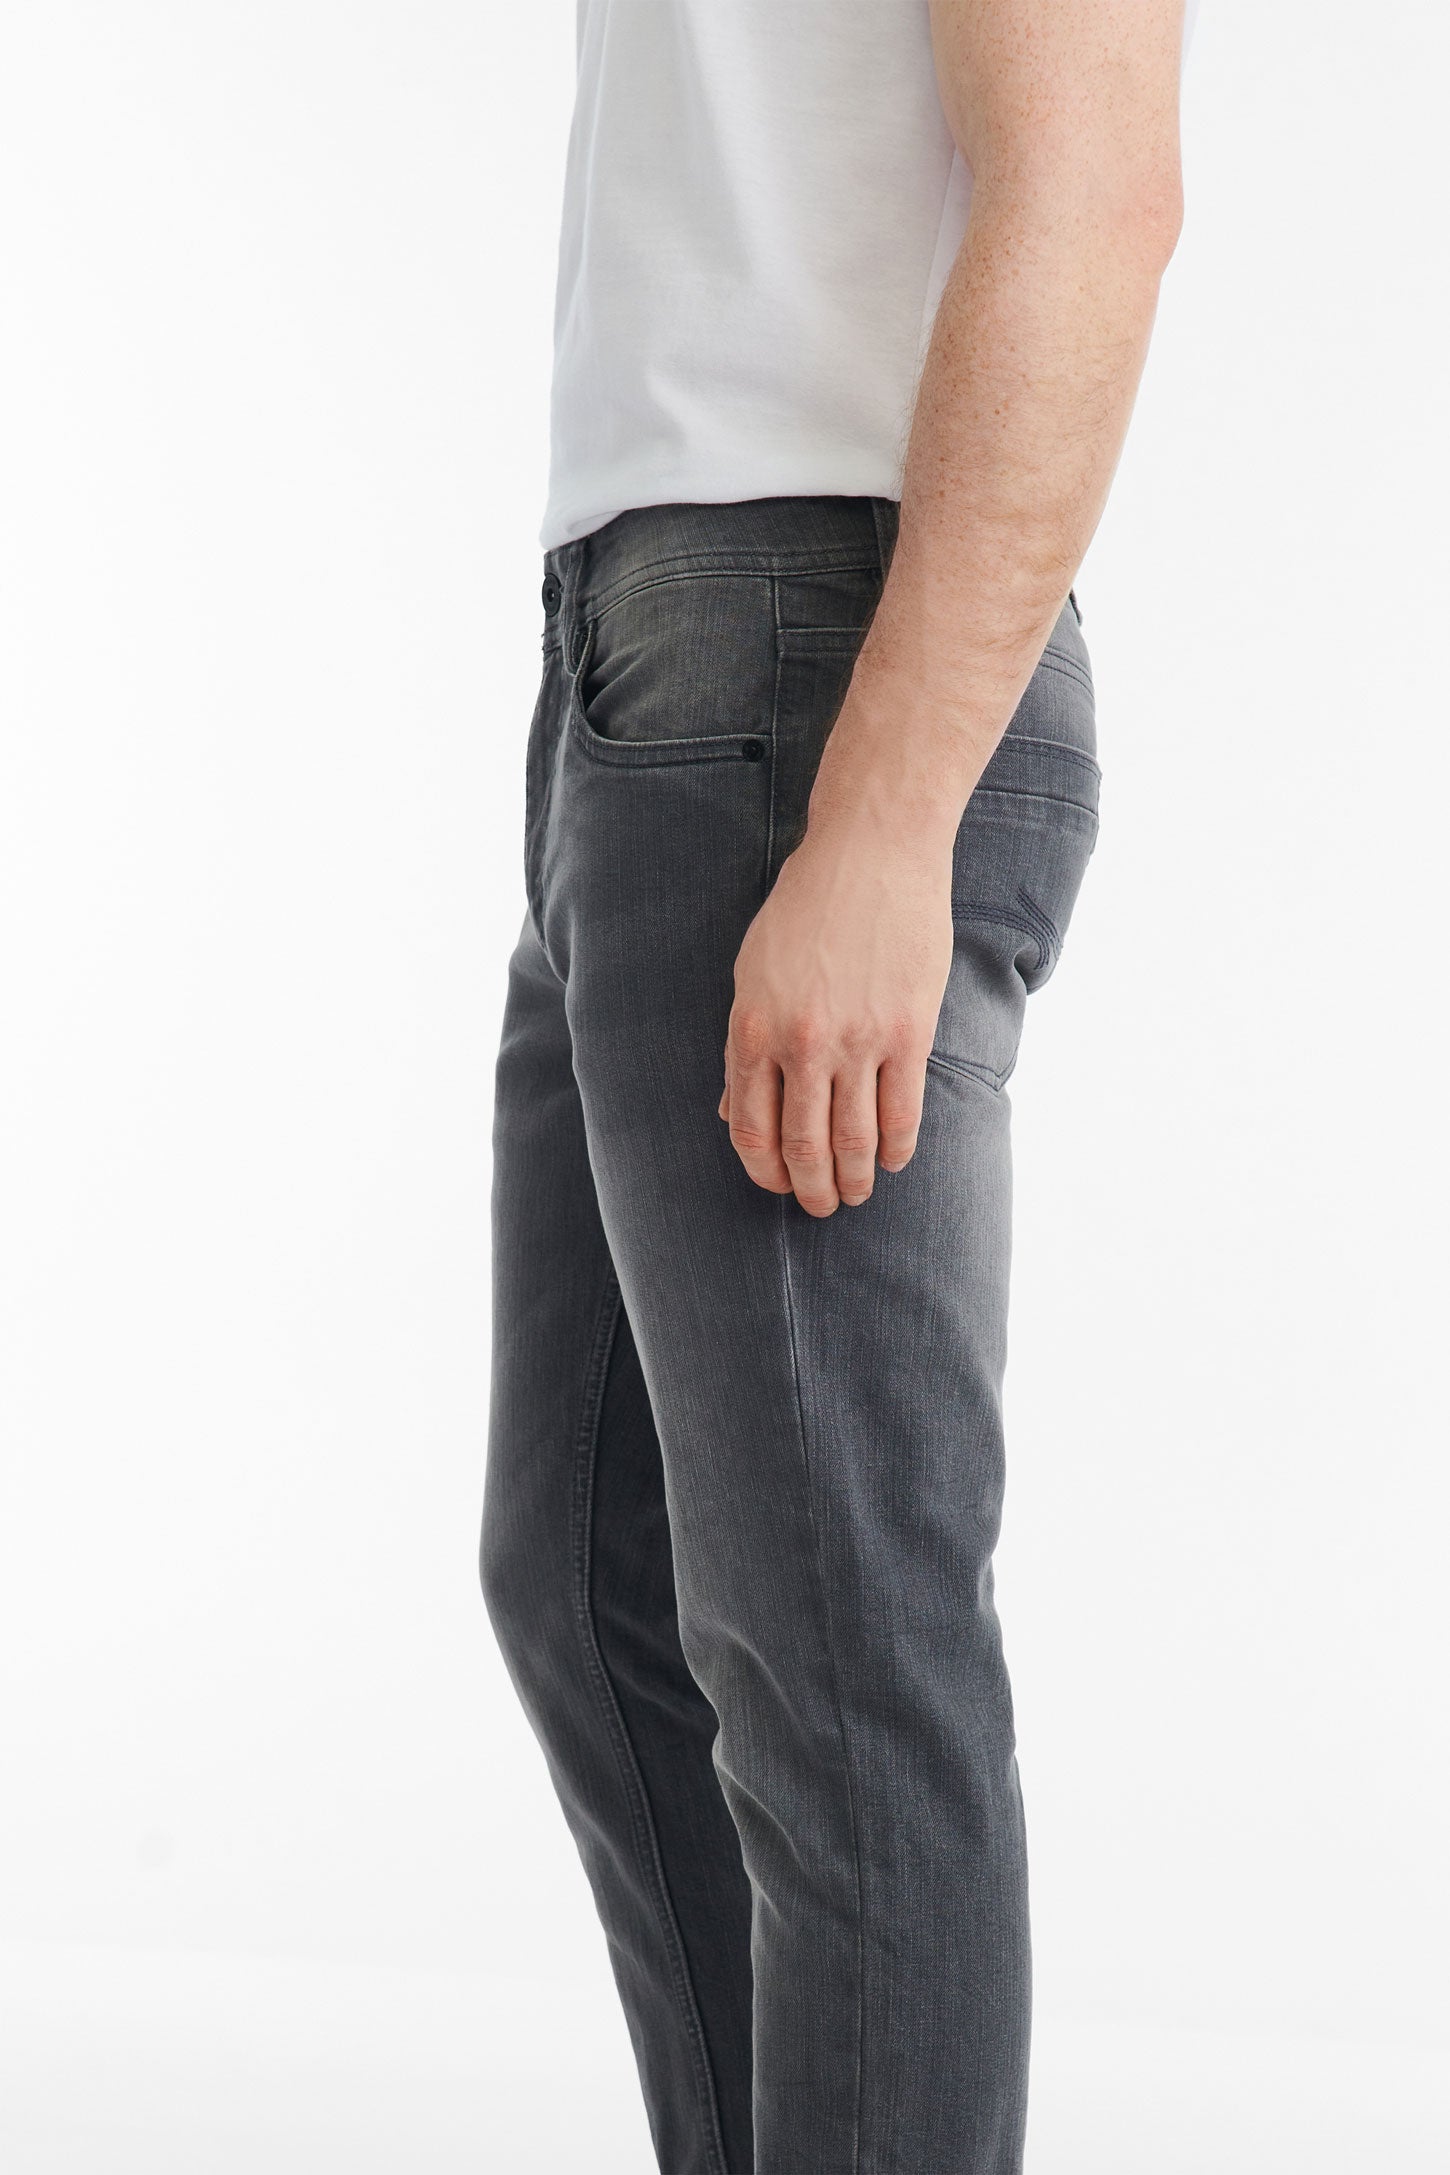 Jeans 5 poches coupe ajustée 32'' - Homme && GRIS